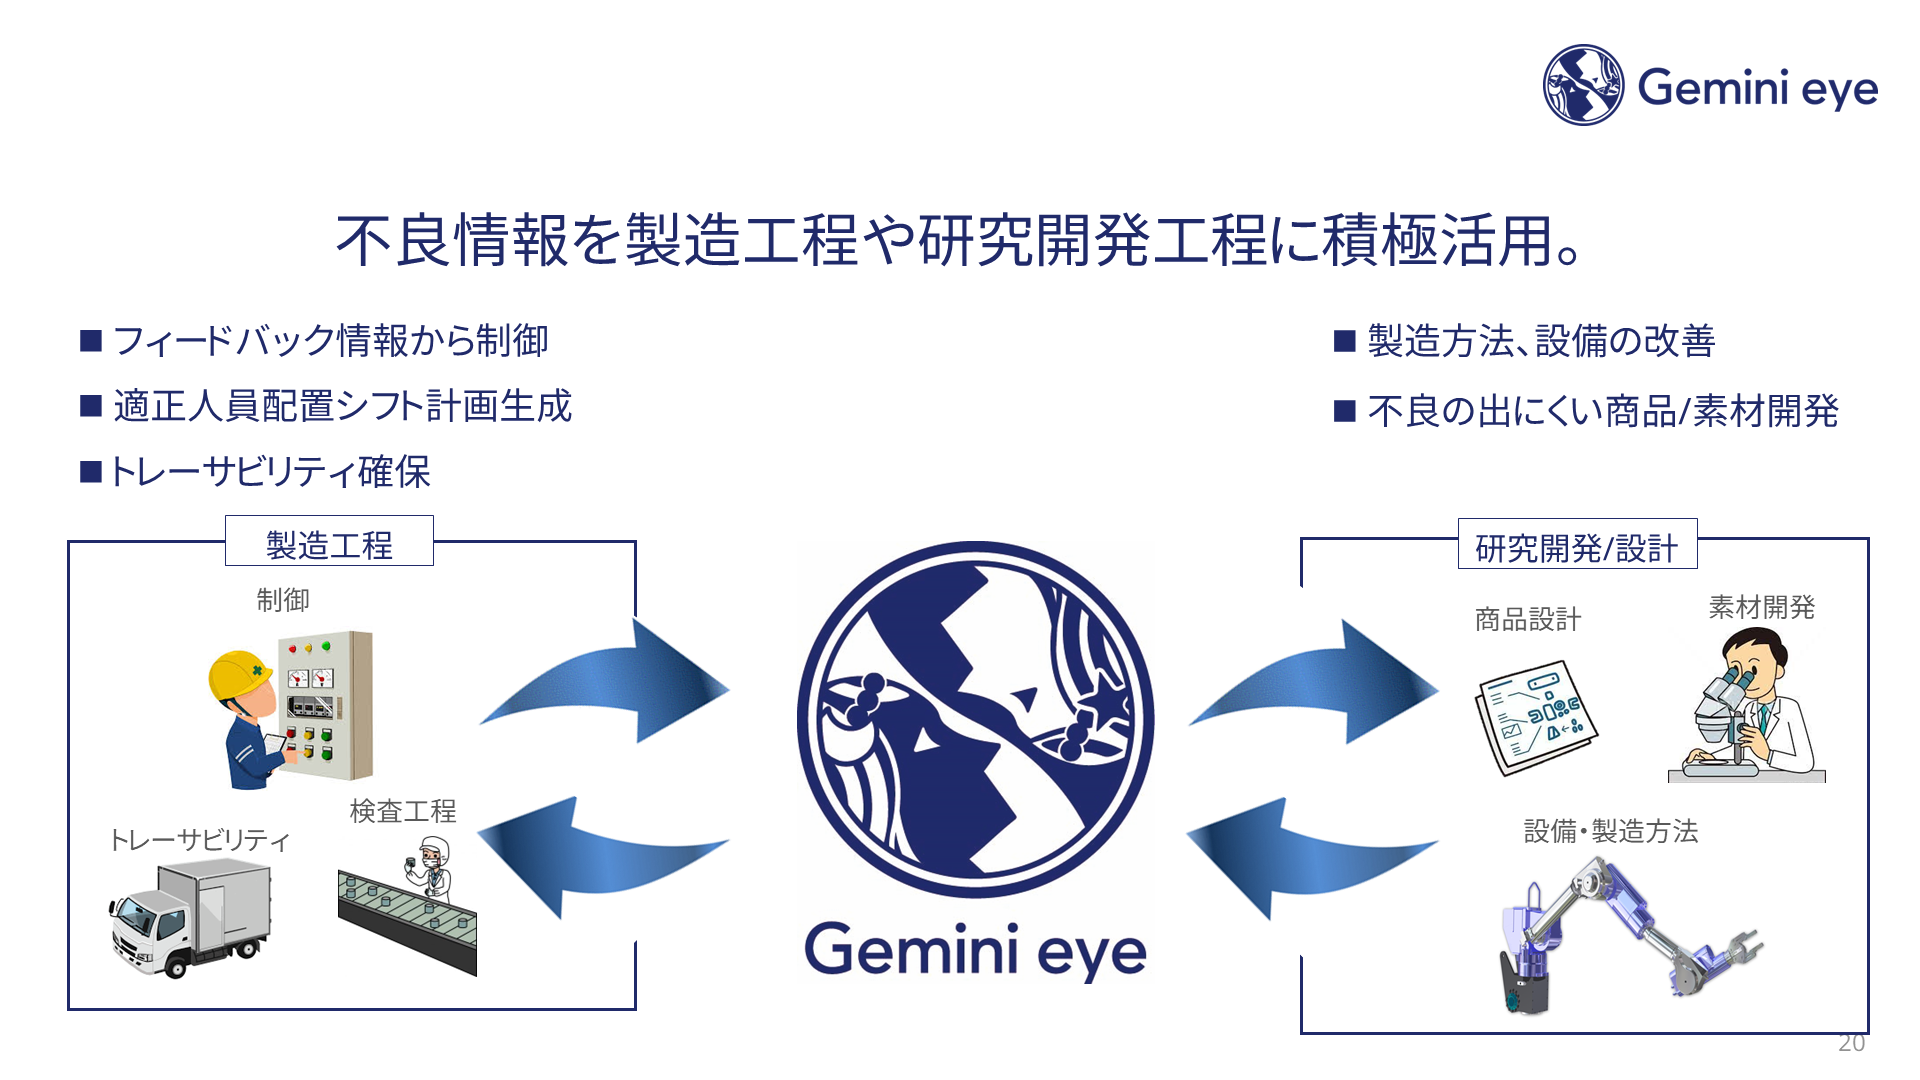 Gemini eye DXへの応用